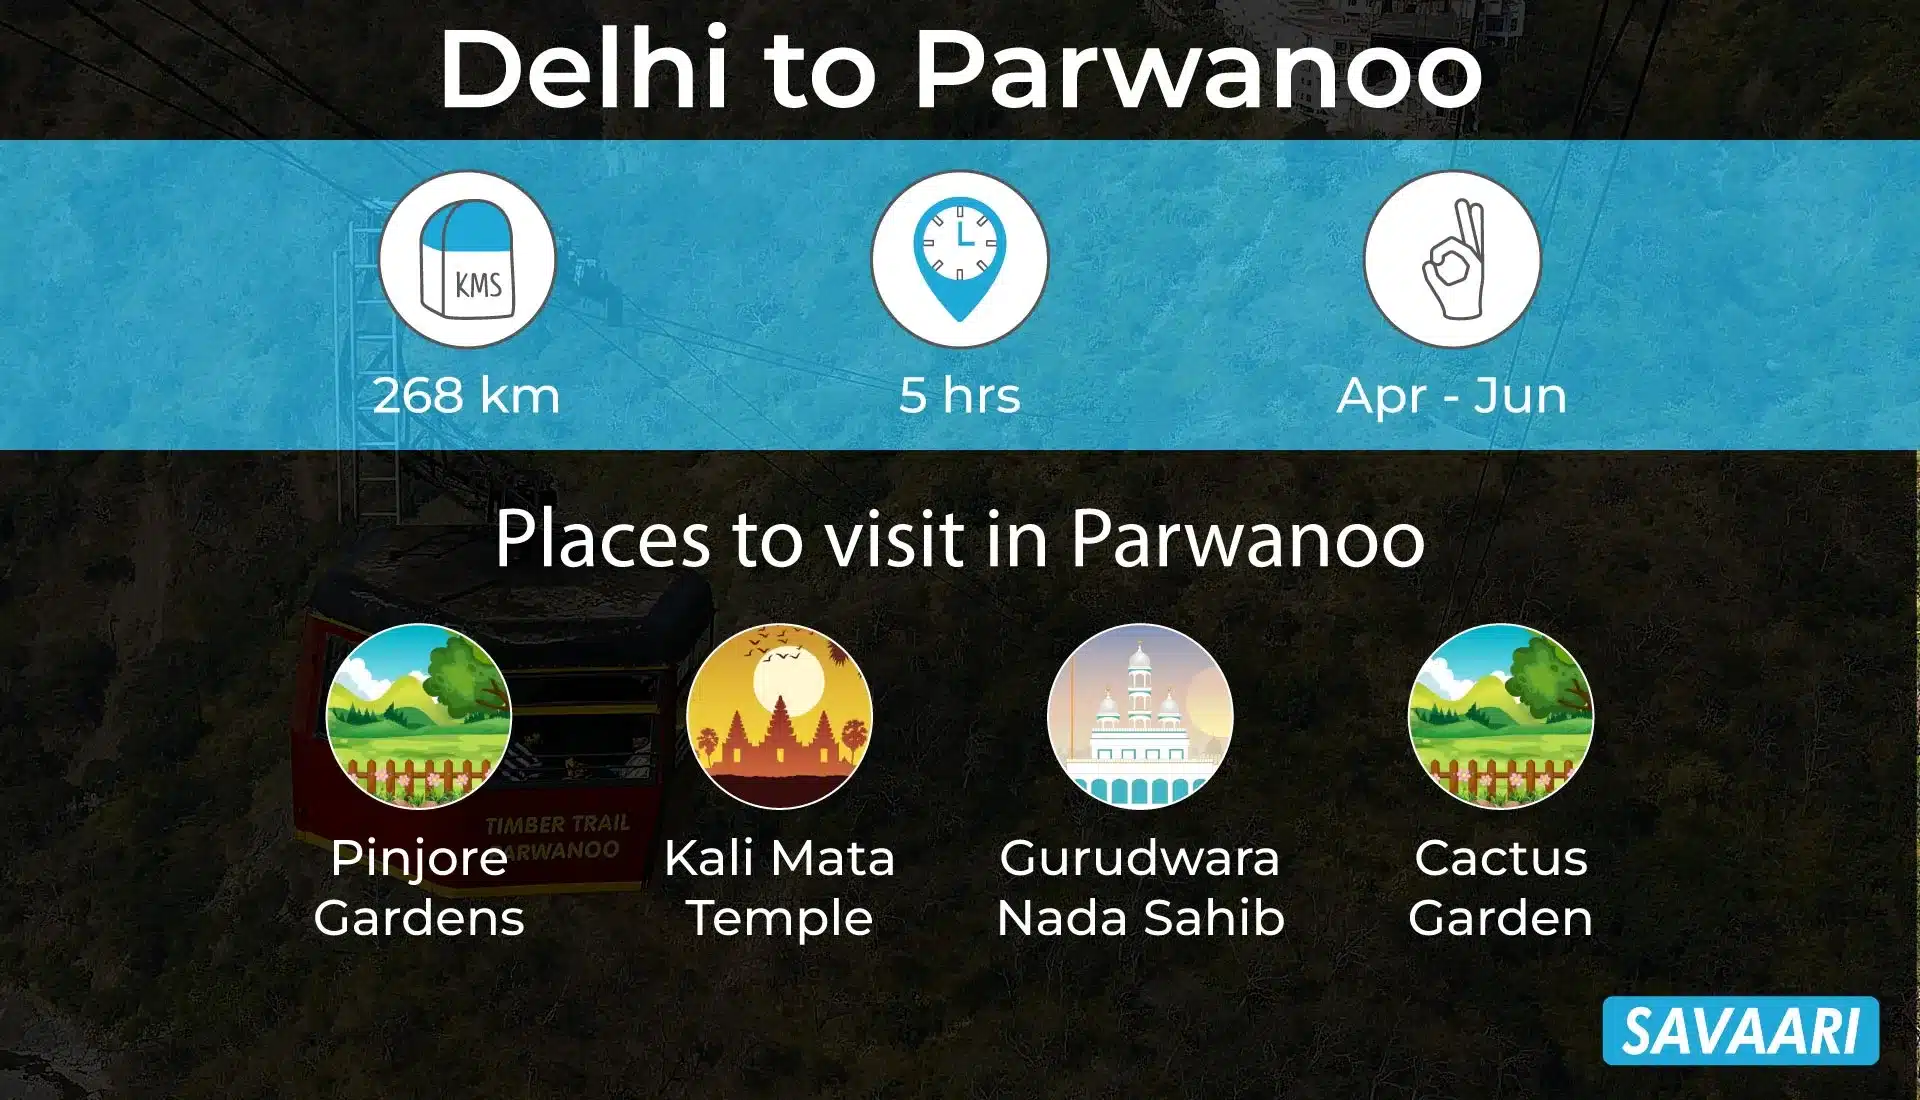 Delhi to Parwanoo by road